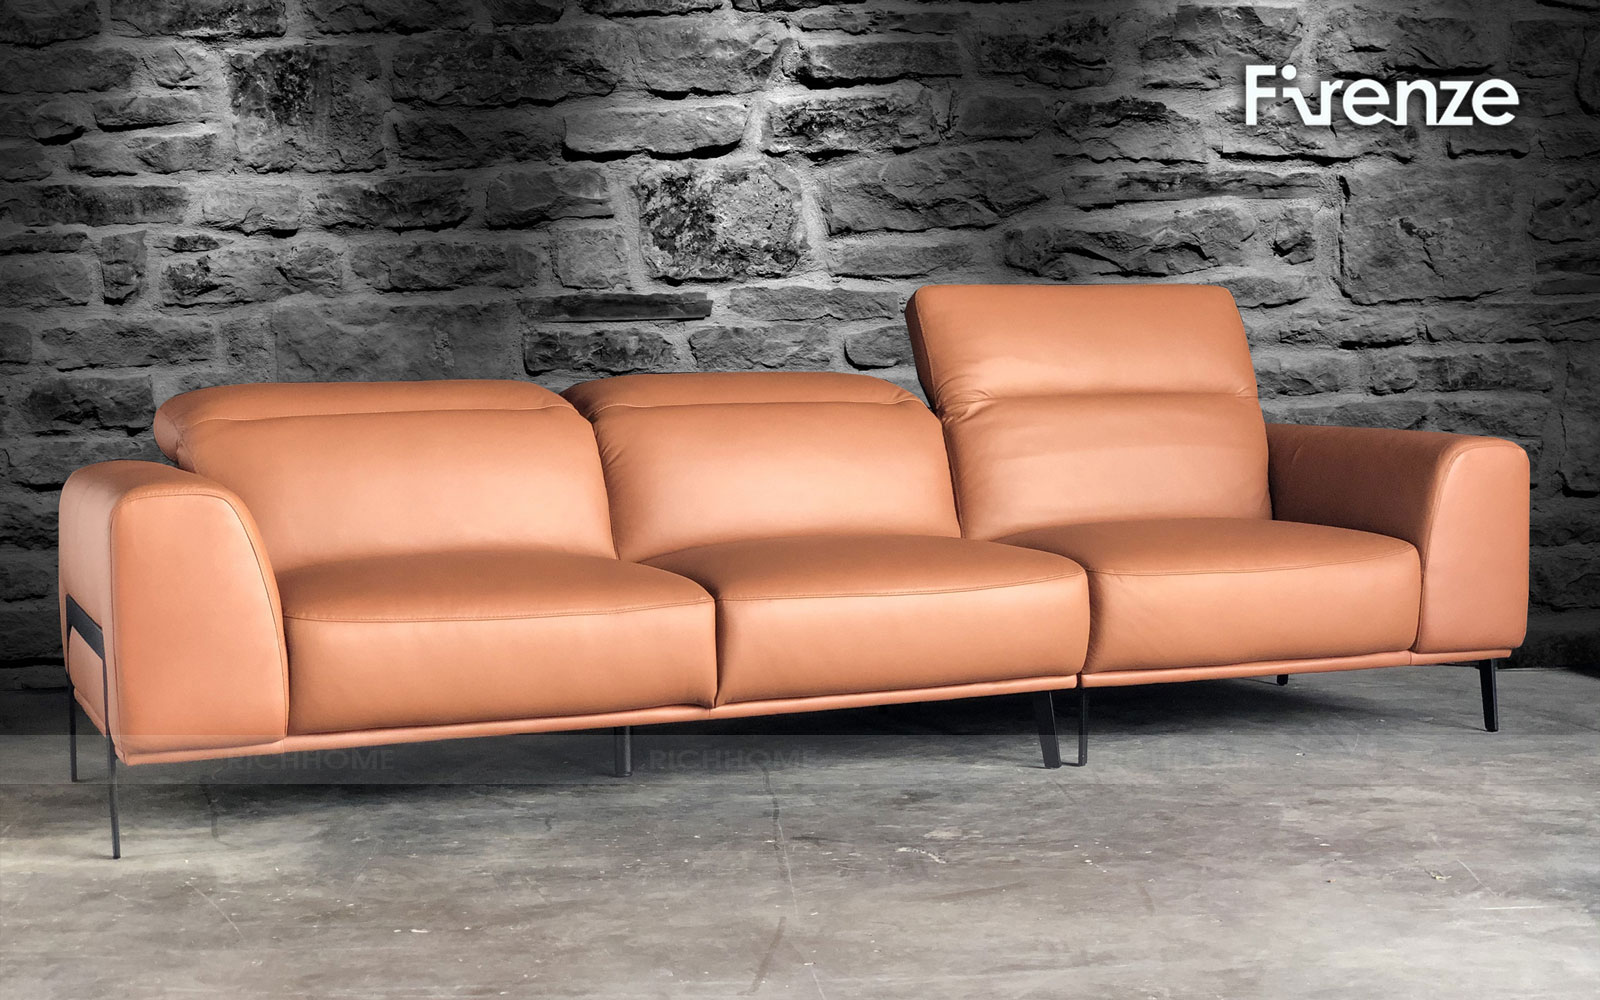 Sofa văng hiện đại - lựa chọn an toàn cho mọi không gian nội thất - Ảnh 2